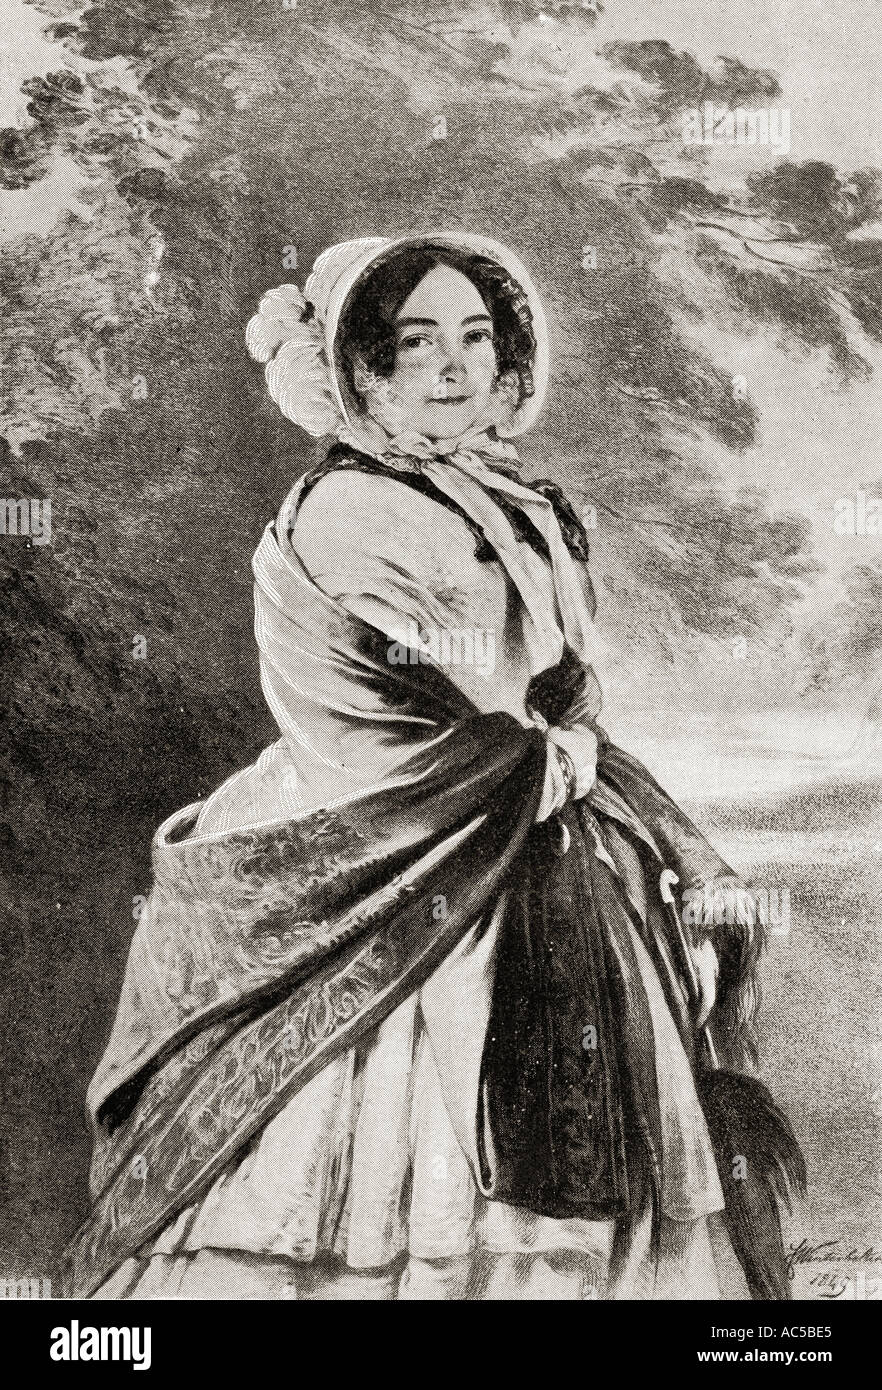 Prinzessin Mary Louise Victoria, Herzogin von Kent und Strathearn, 1786-1861. Mutter der Königin Victoria. Von einem Bild von Winterhalter Stockfoto